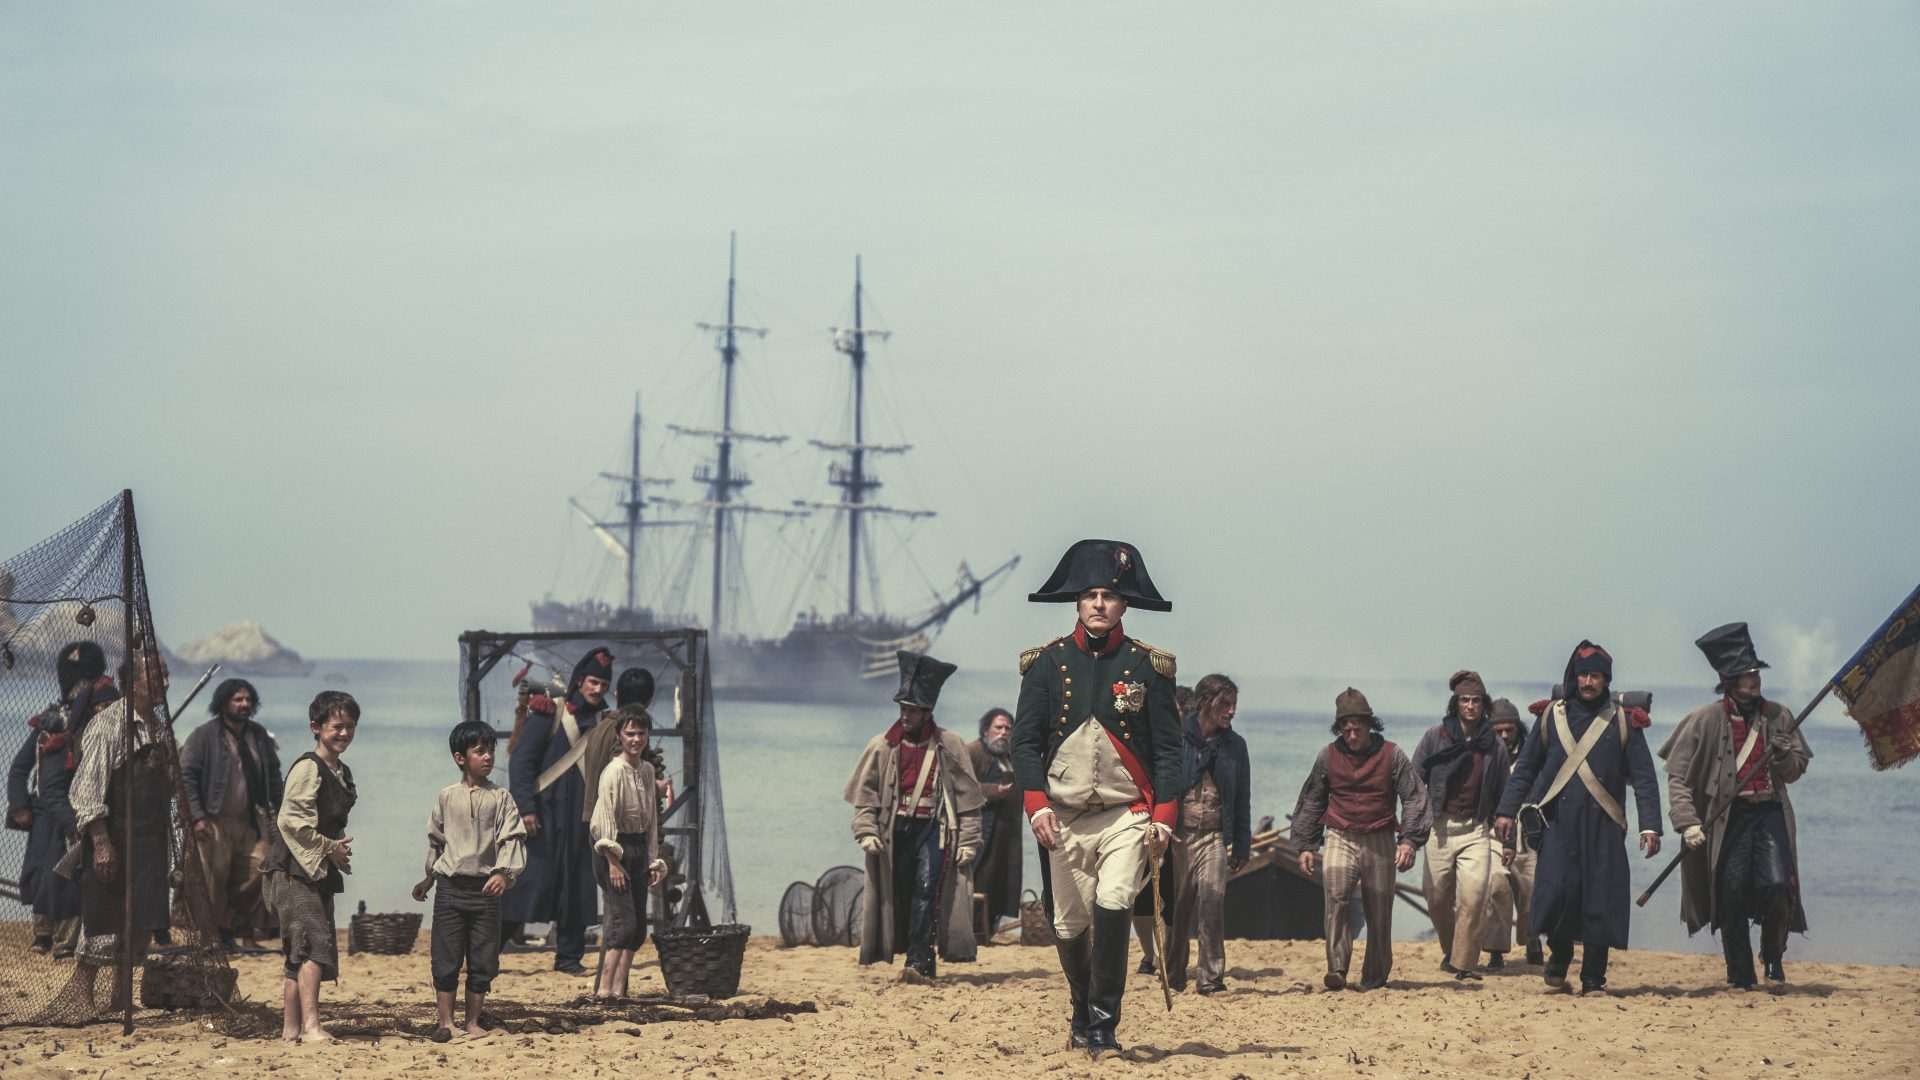 Joaquin Phoenix in Ridley Scott's Napoleon. Photo: Sony Pictures